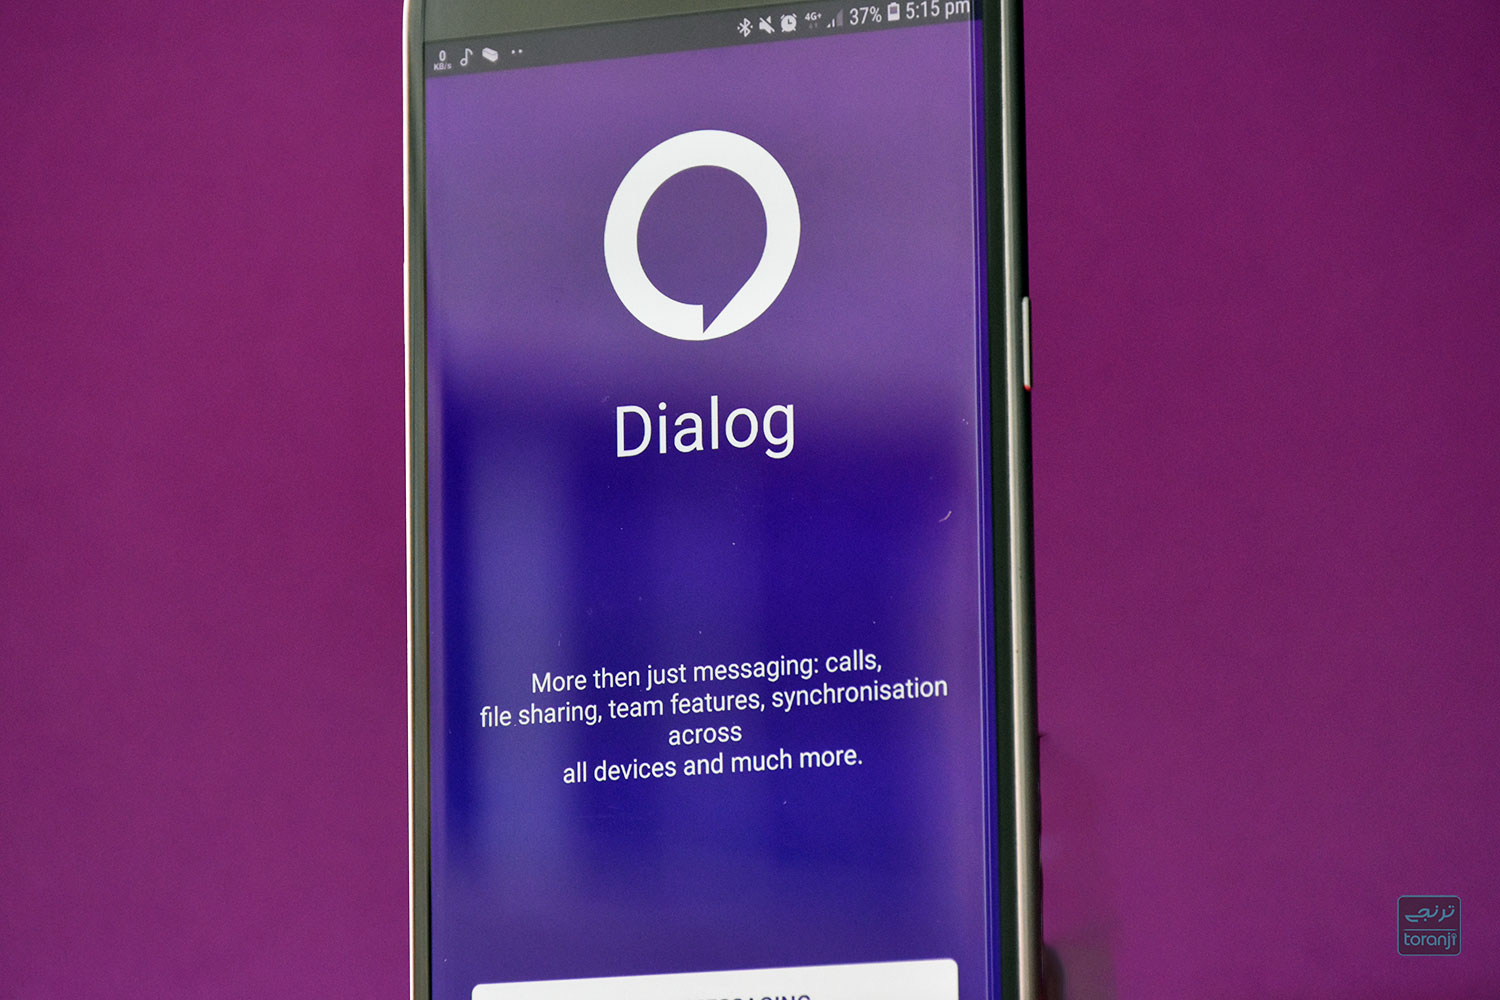 با پیام رسان دیالوگ (Dialog) آشنا شوید، یک پیام رسان مولتی پلتفرم با قابلیت کانال، تماس صوتی و تصویری